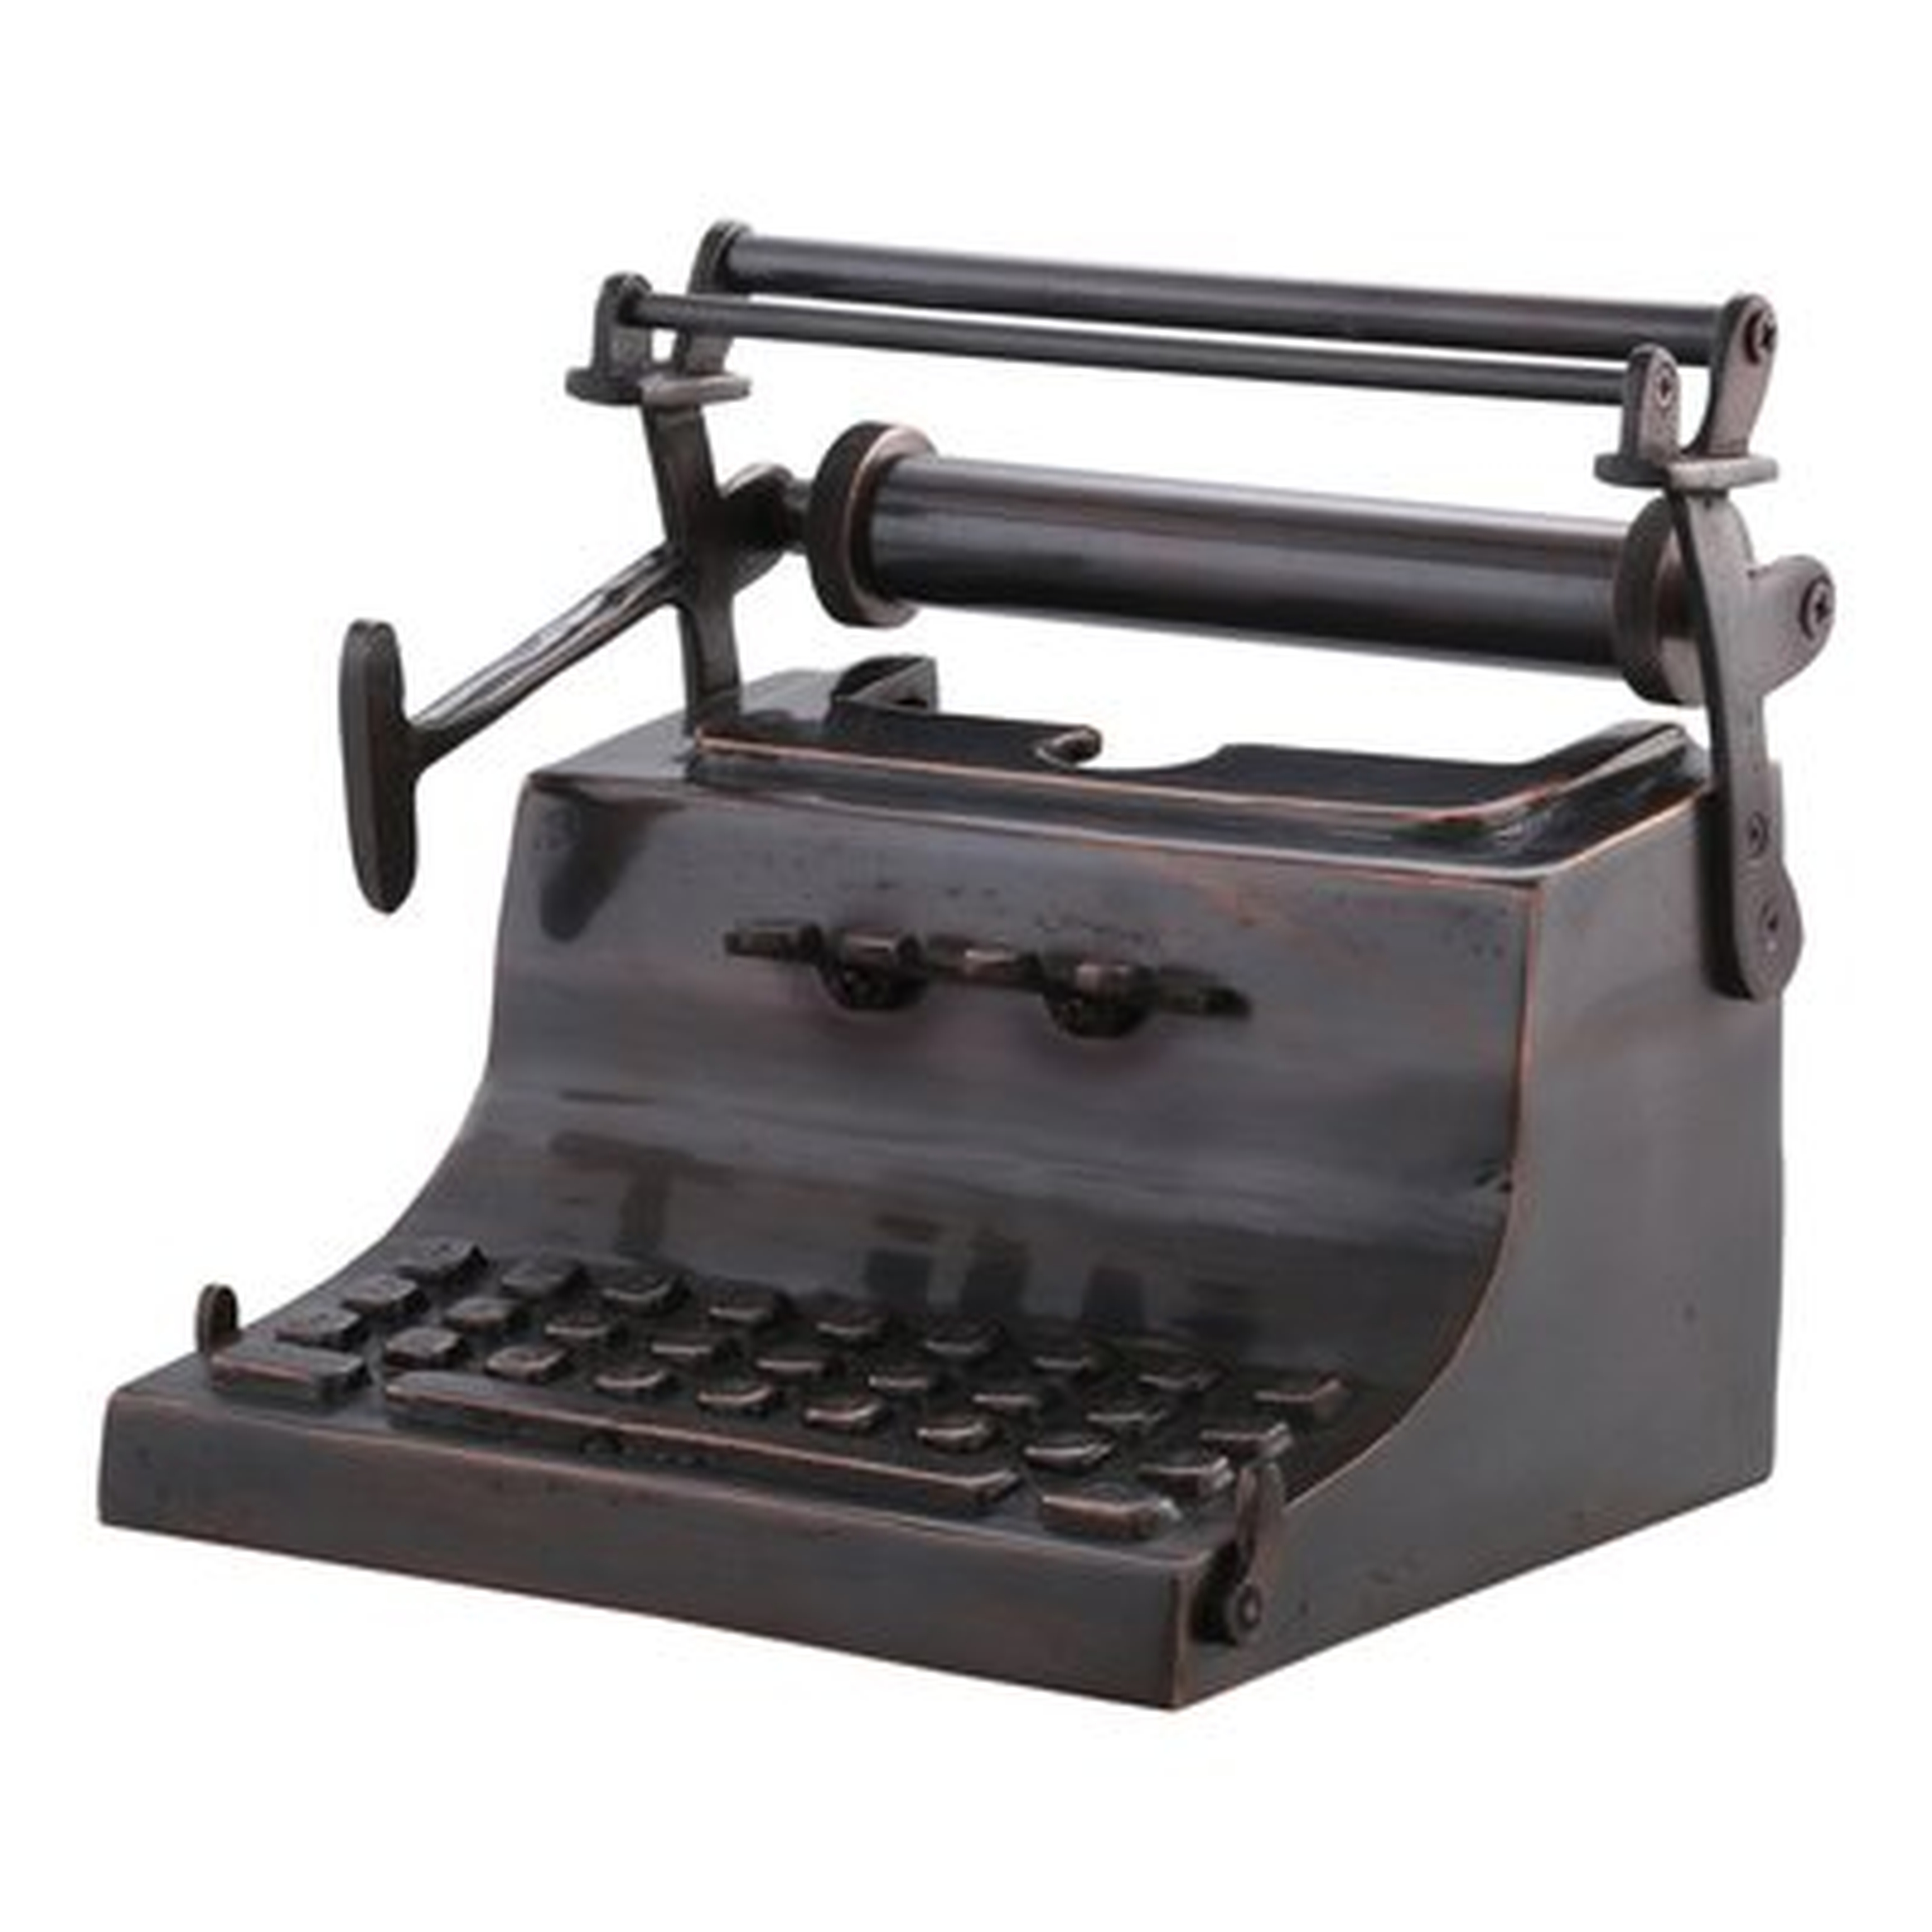 Morrissey Typewriter - Wayfair